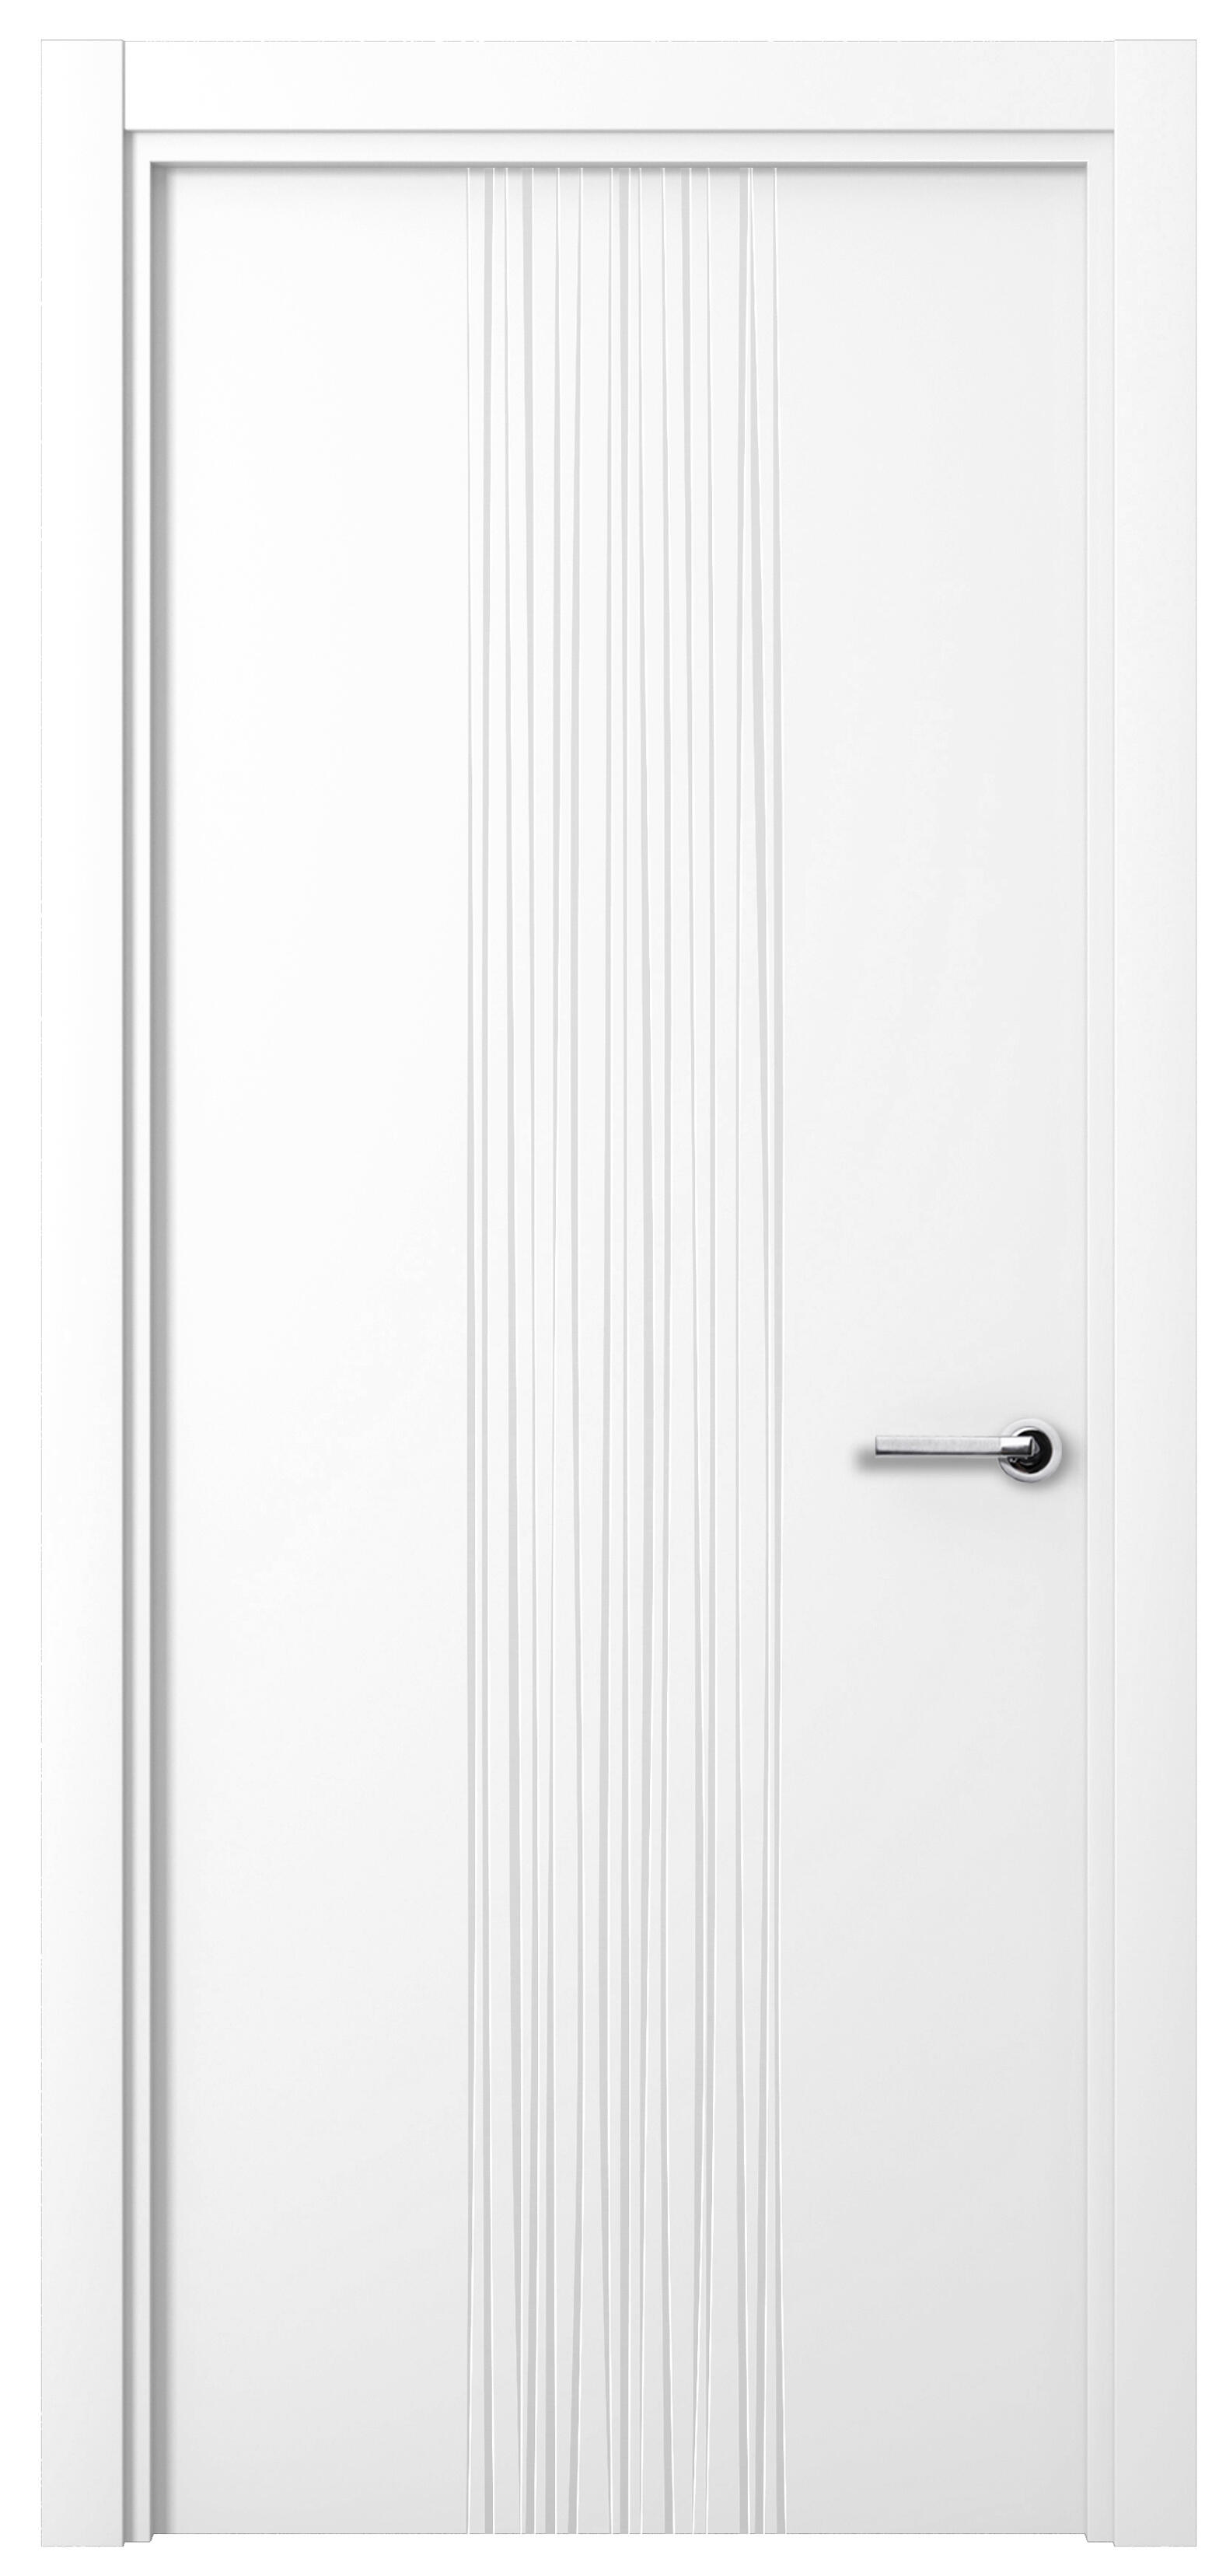 Puerta quevedo premium blanco apertura izquierda 9x82.5cm